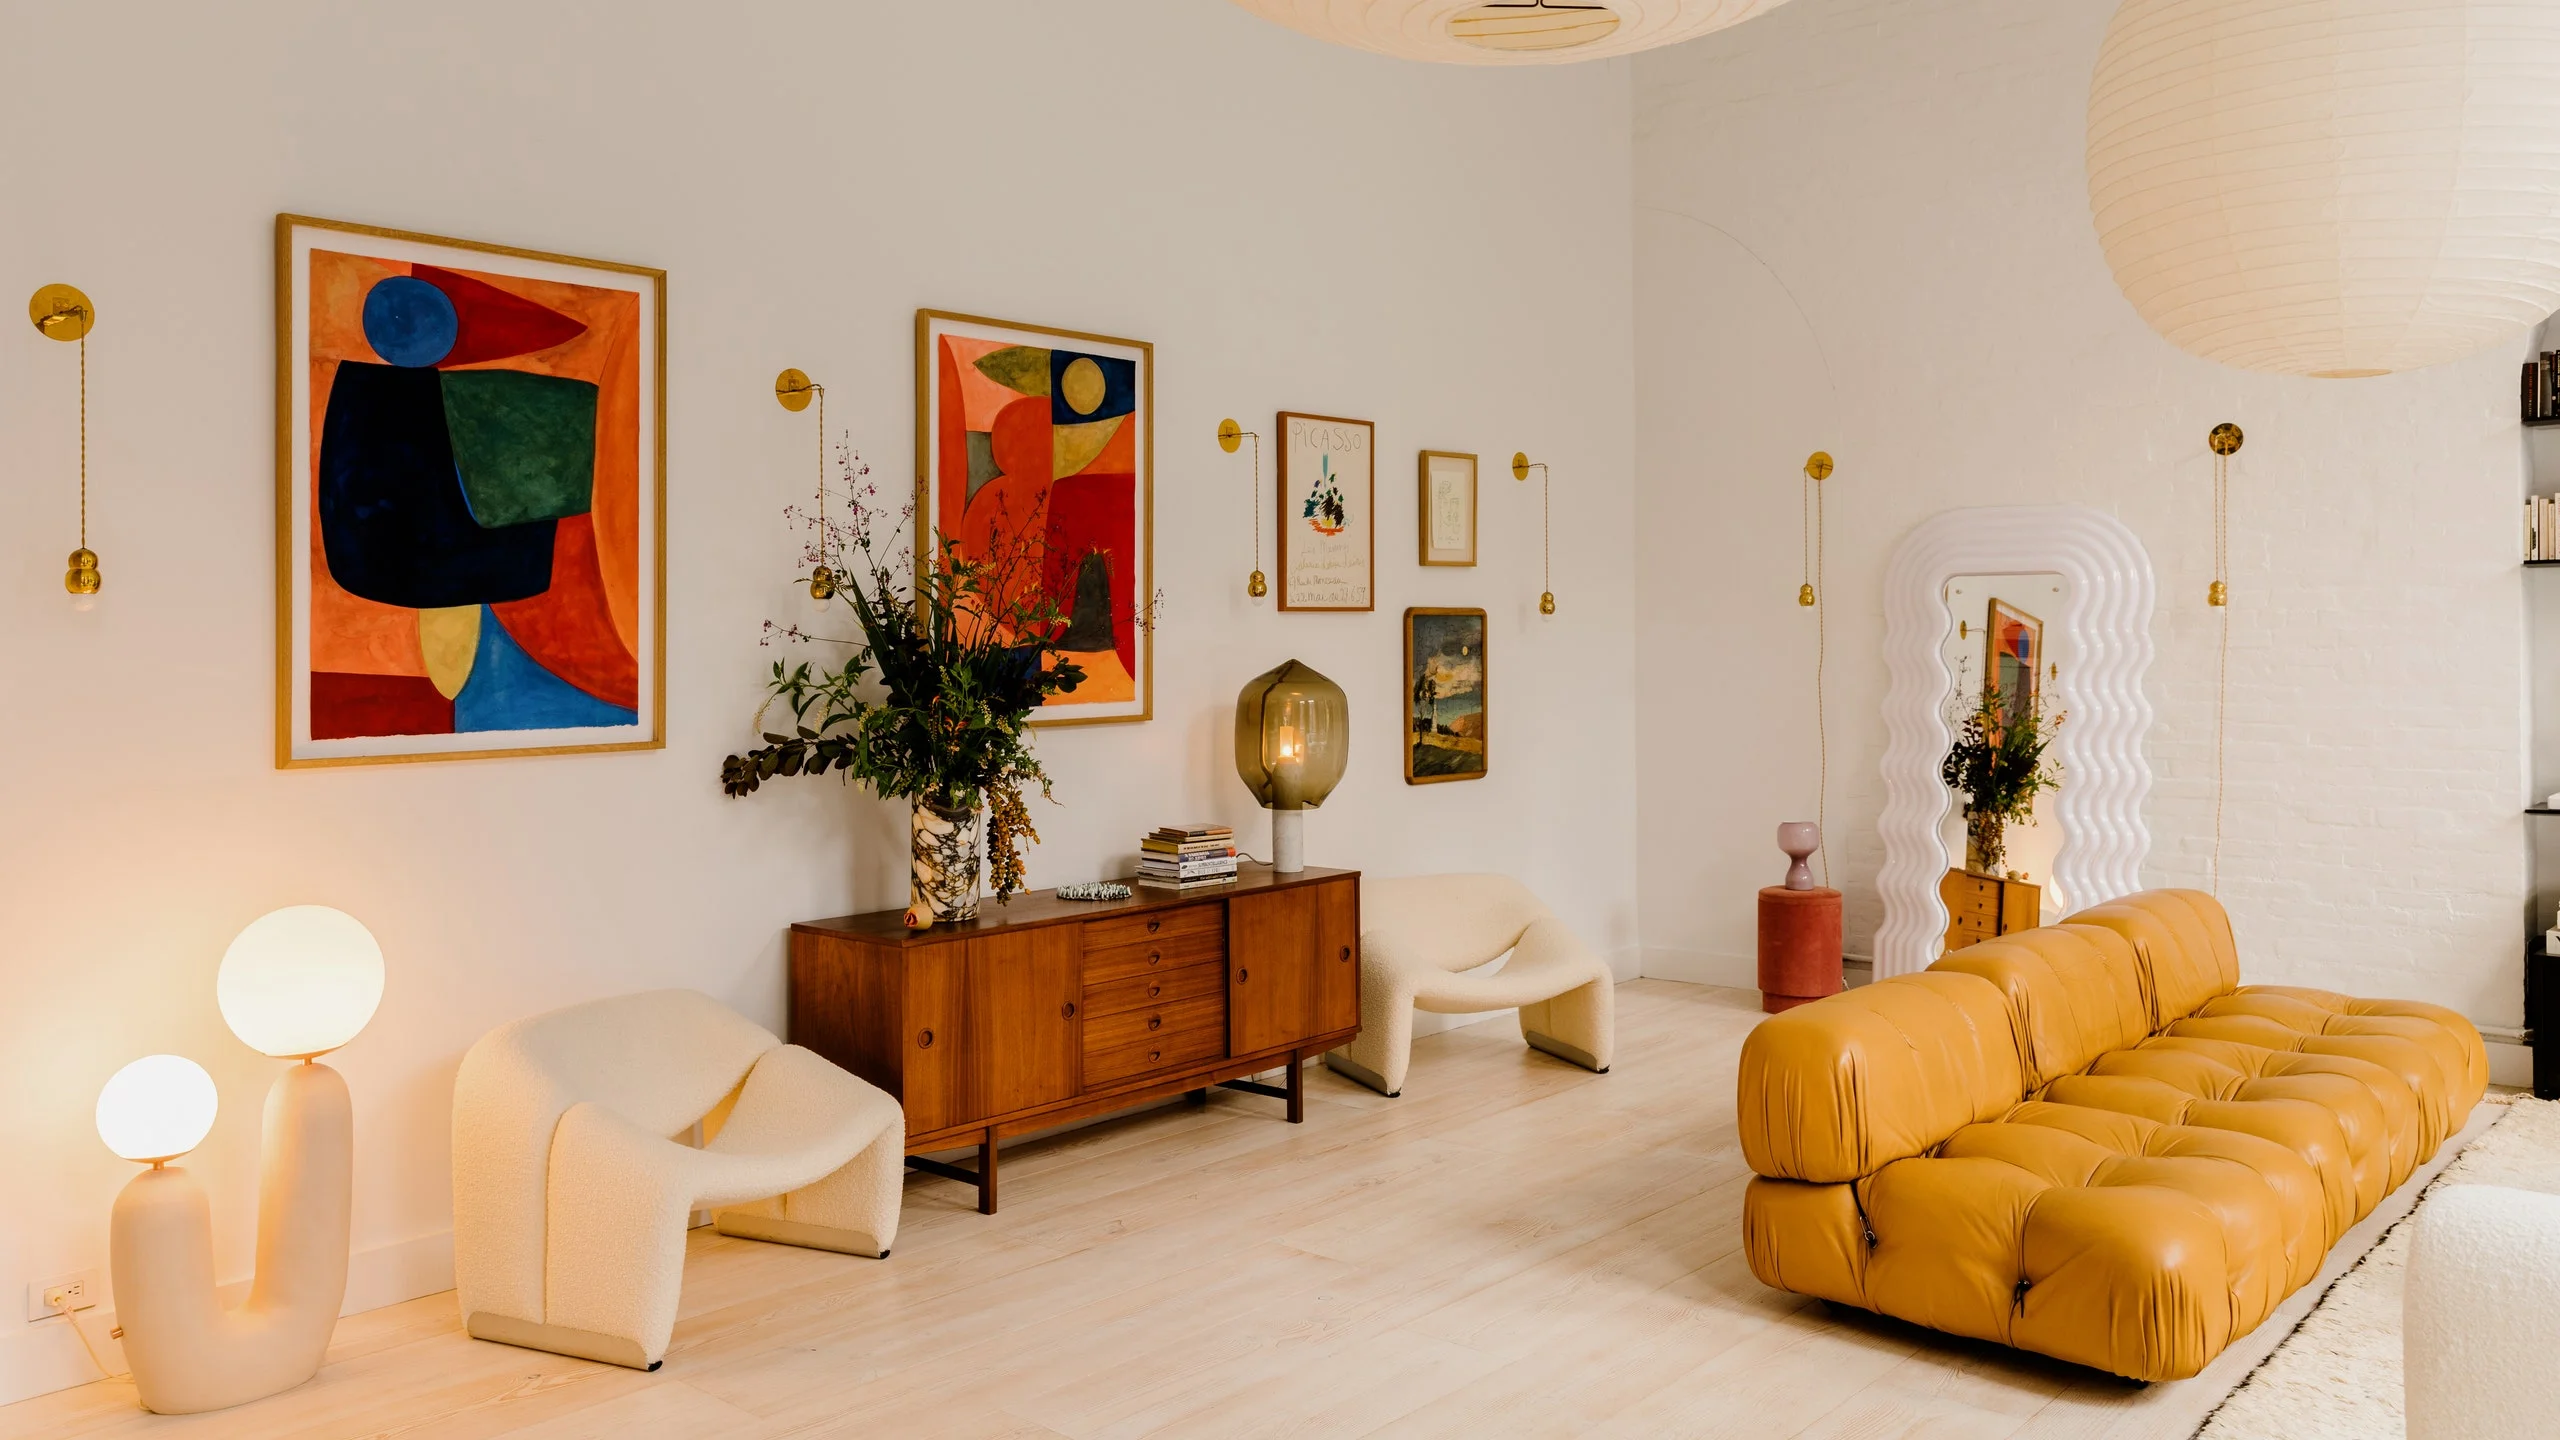 Супермодель Эльза Хоск продемонстрировала яркий интерьер своего дома - фото 491267